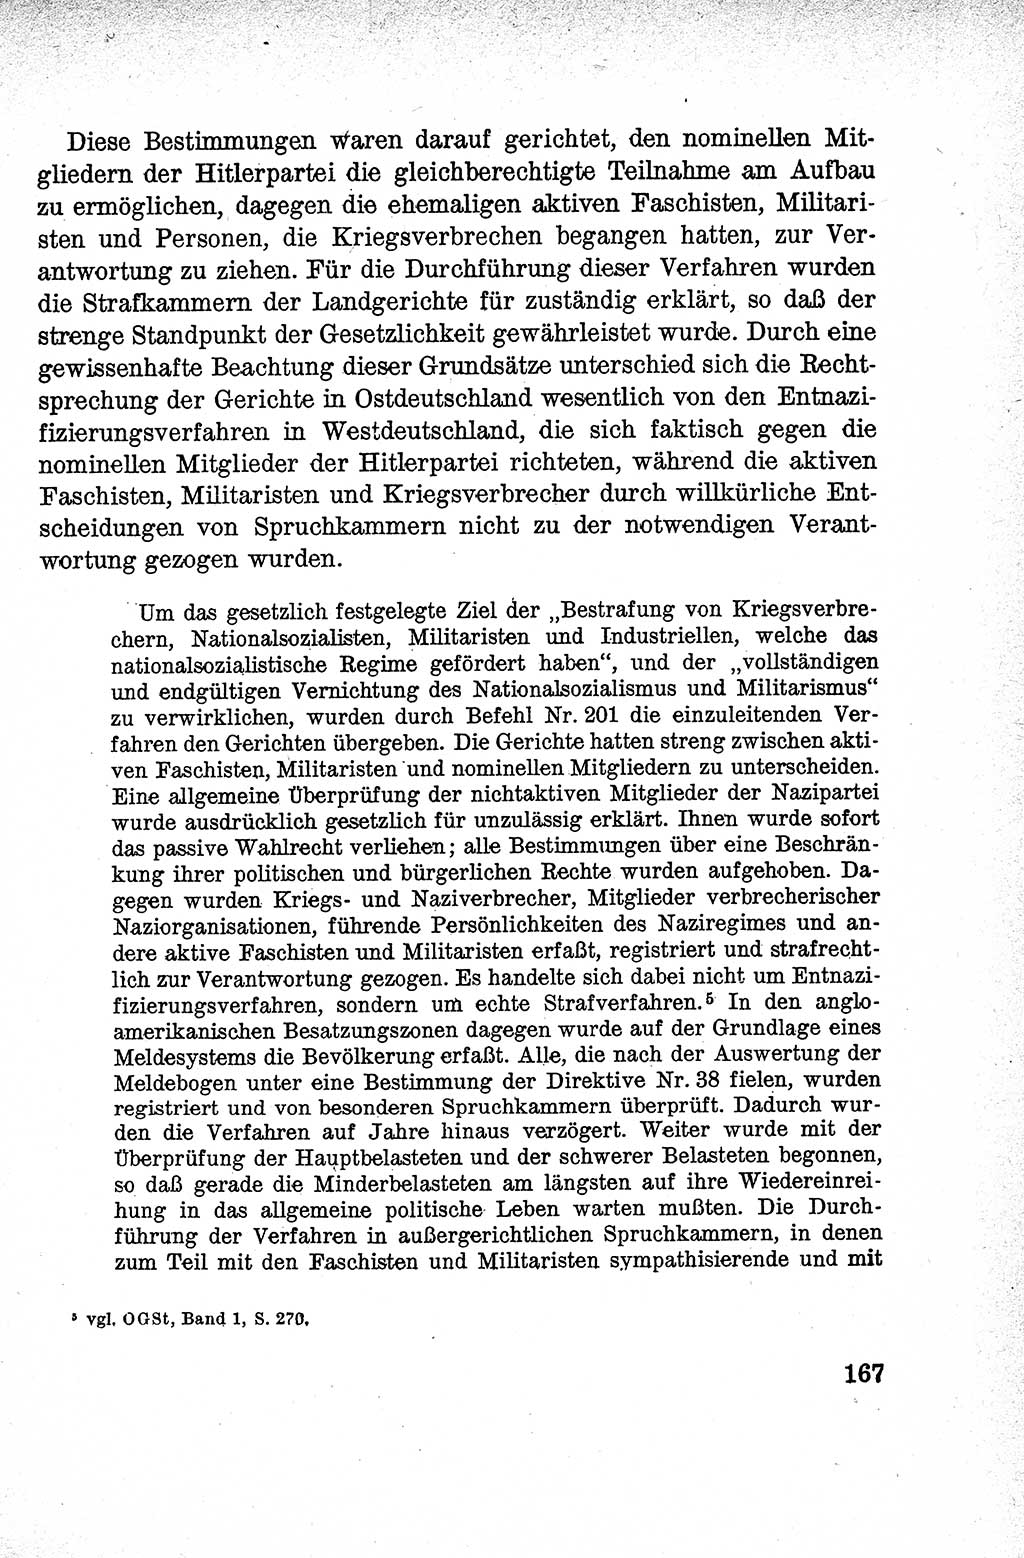 Lehrbuch des Strafrechts der Deutschen Demokratischen Republik (DDR), Allgemeiner Teil 1959, Seite 167 (Lb. Strafr. DDR AT 1959, S. 167)